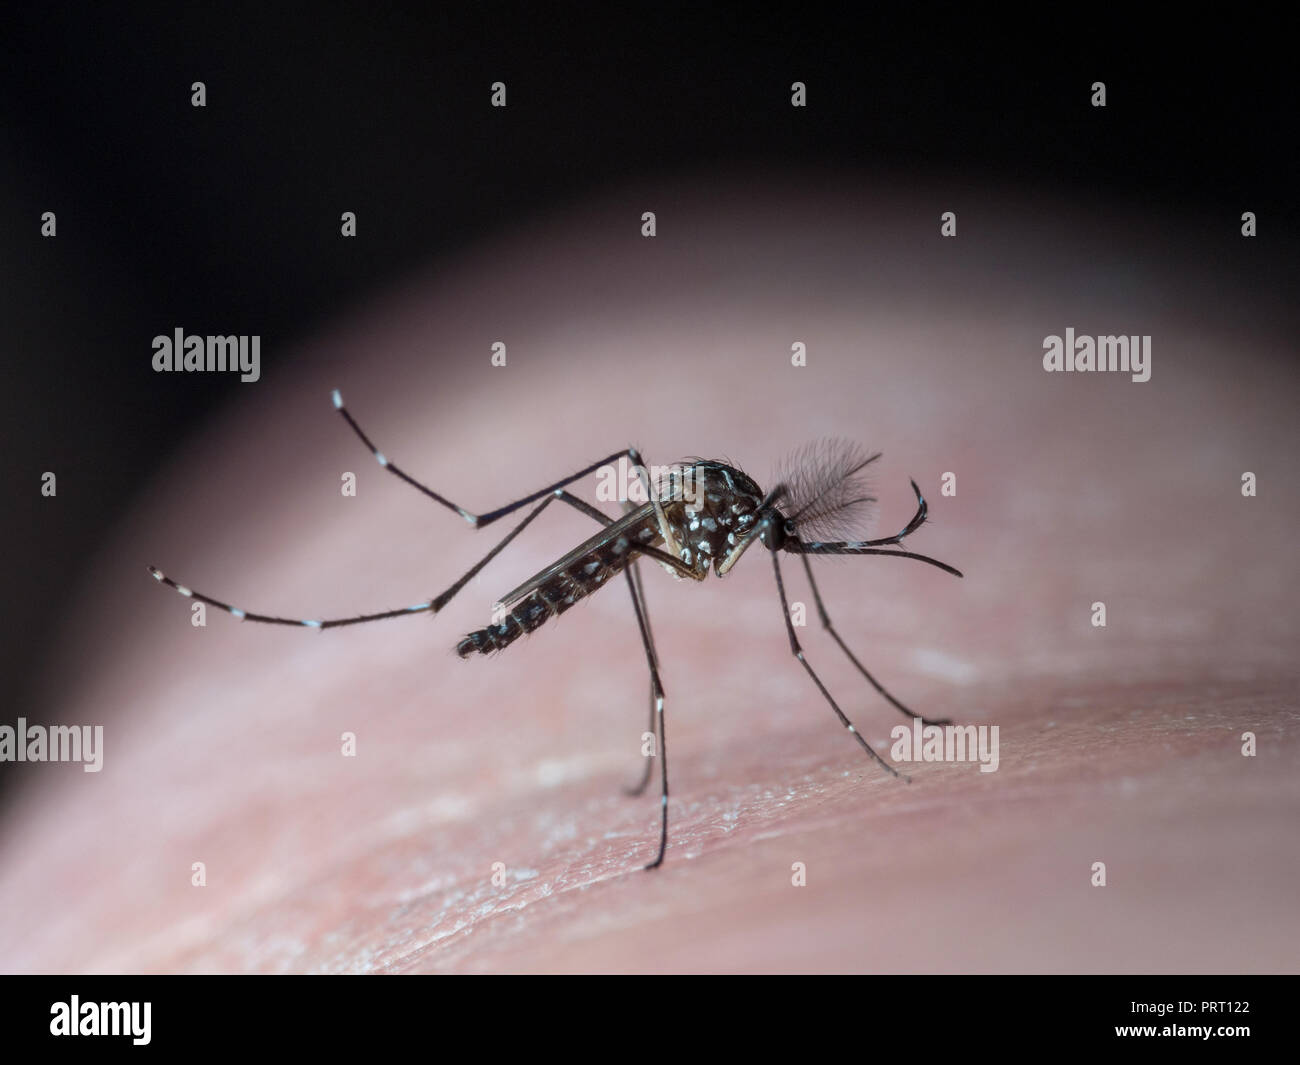 Homme moustique de la fièvre jaune (Aedes aegypti) assis sur la peau humaine, c'est un vecteur de la maladie de la dengue, le virus du Nil occidental, le chikungunya et zika. Banque D'Images